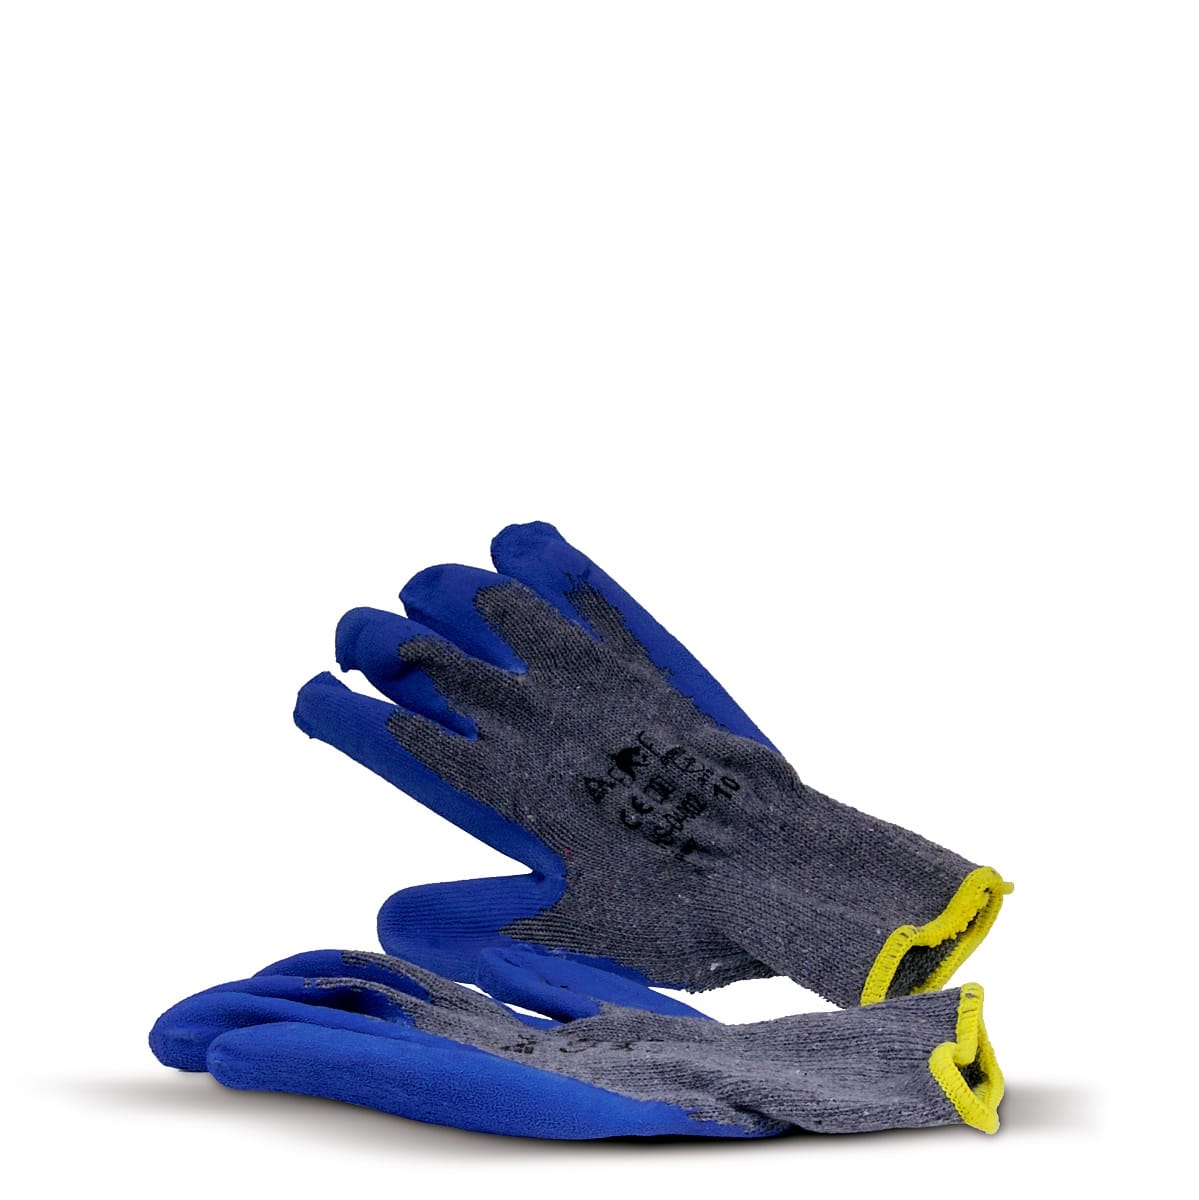 Kruik Openlijk Lelie Building Gloves zijn bouw handschoenen met een latex palmcoating.